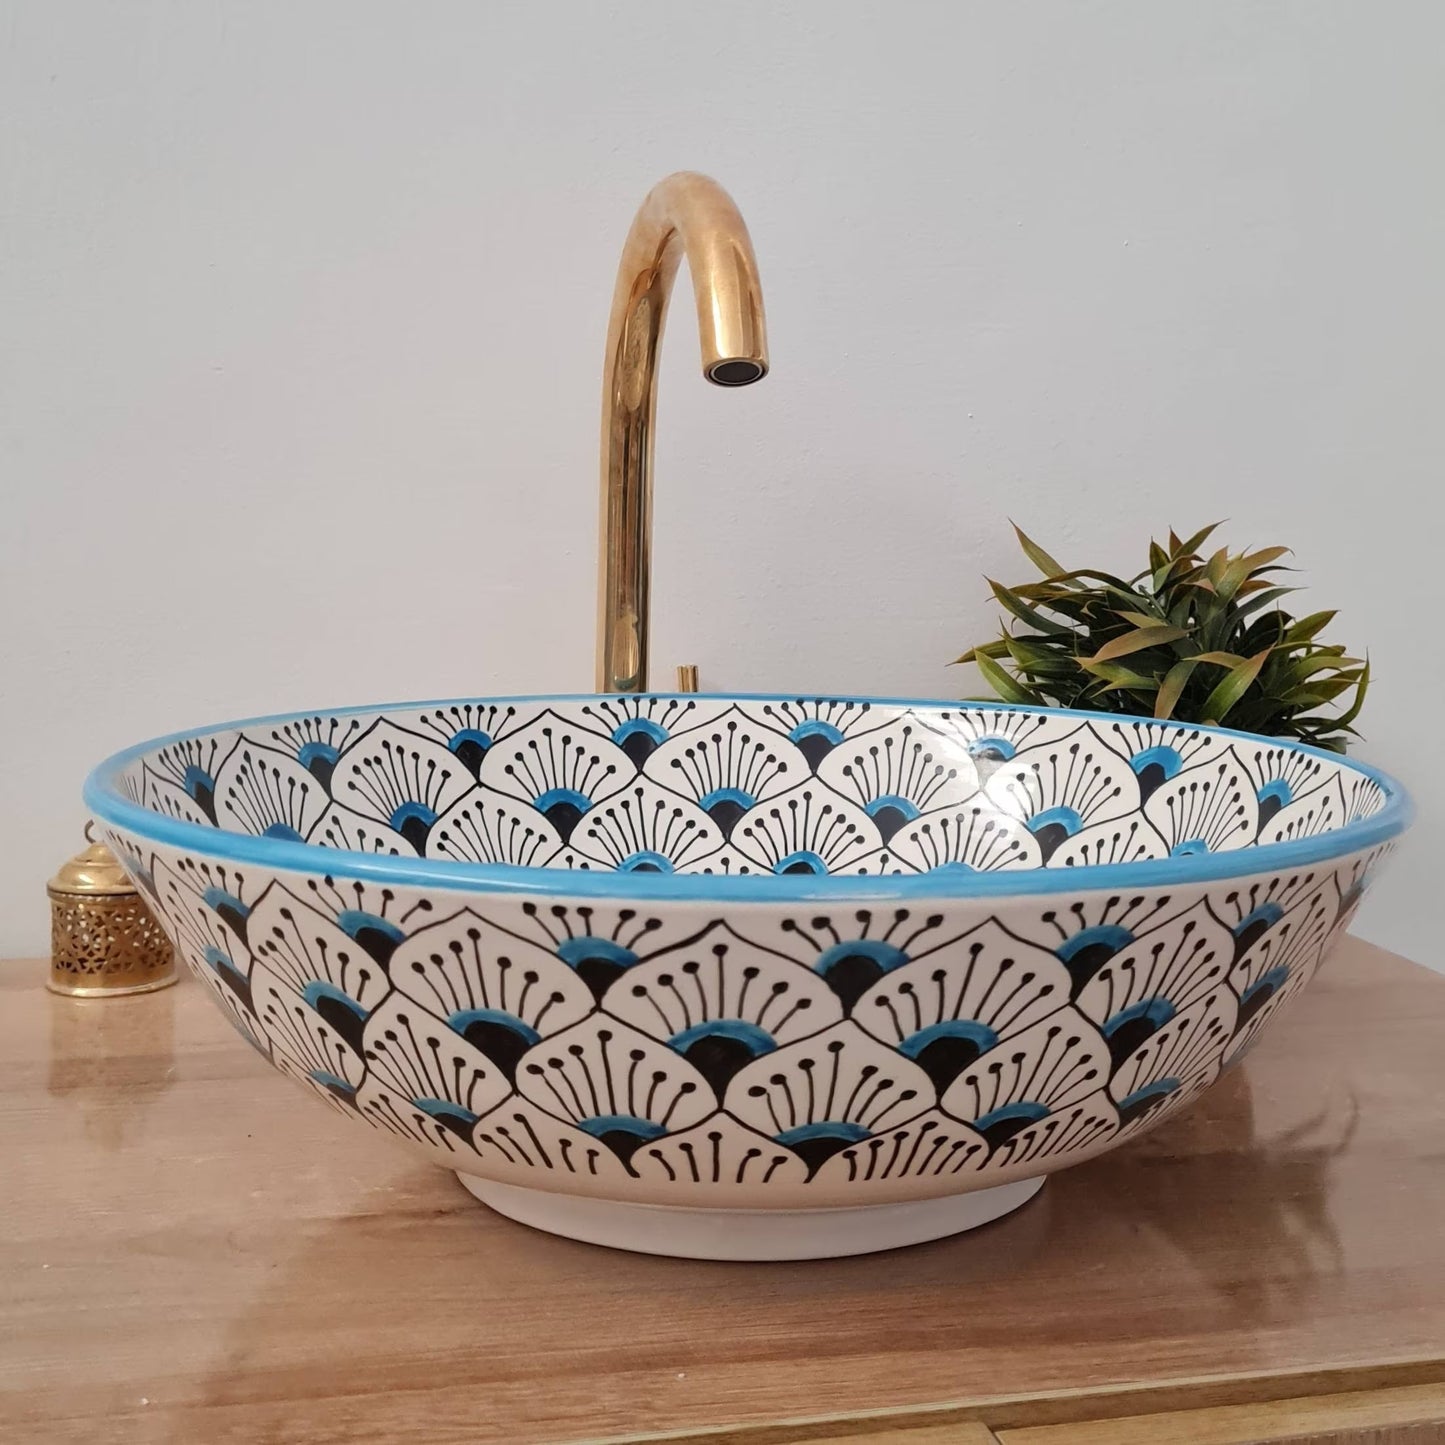 Moroccan sink | moroccan ceramic sink | bathroom sink | moroccan bathroom basin | cloakroom basin | Bleu sink #156